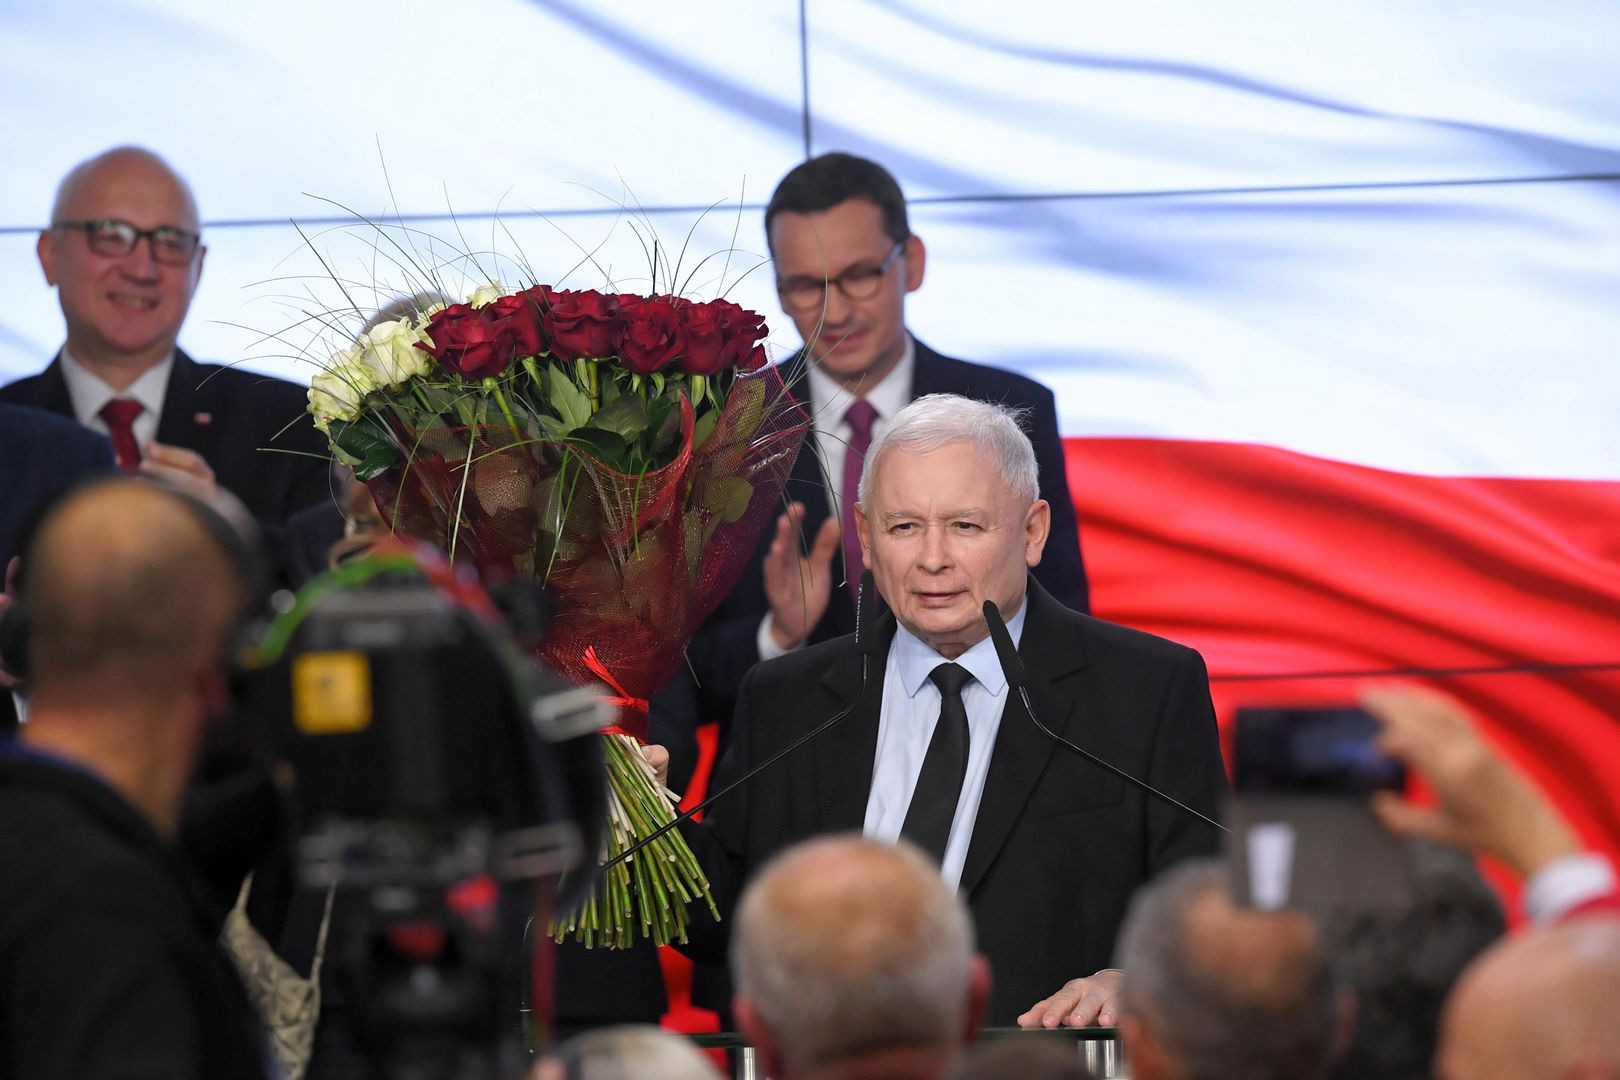 "Niezadowolony”. Ekspertka od wystąpień oceniła powyborcze przemówienie Kaczyńskiego 